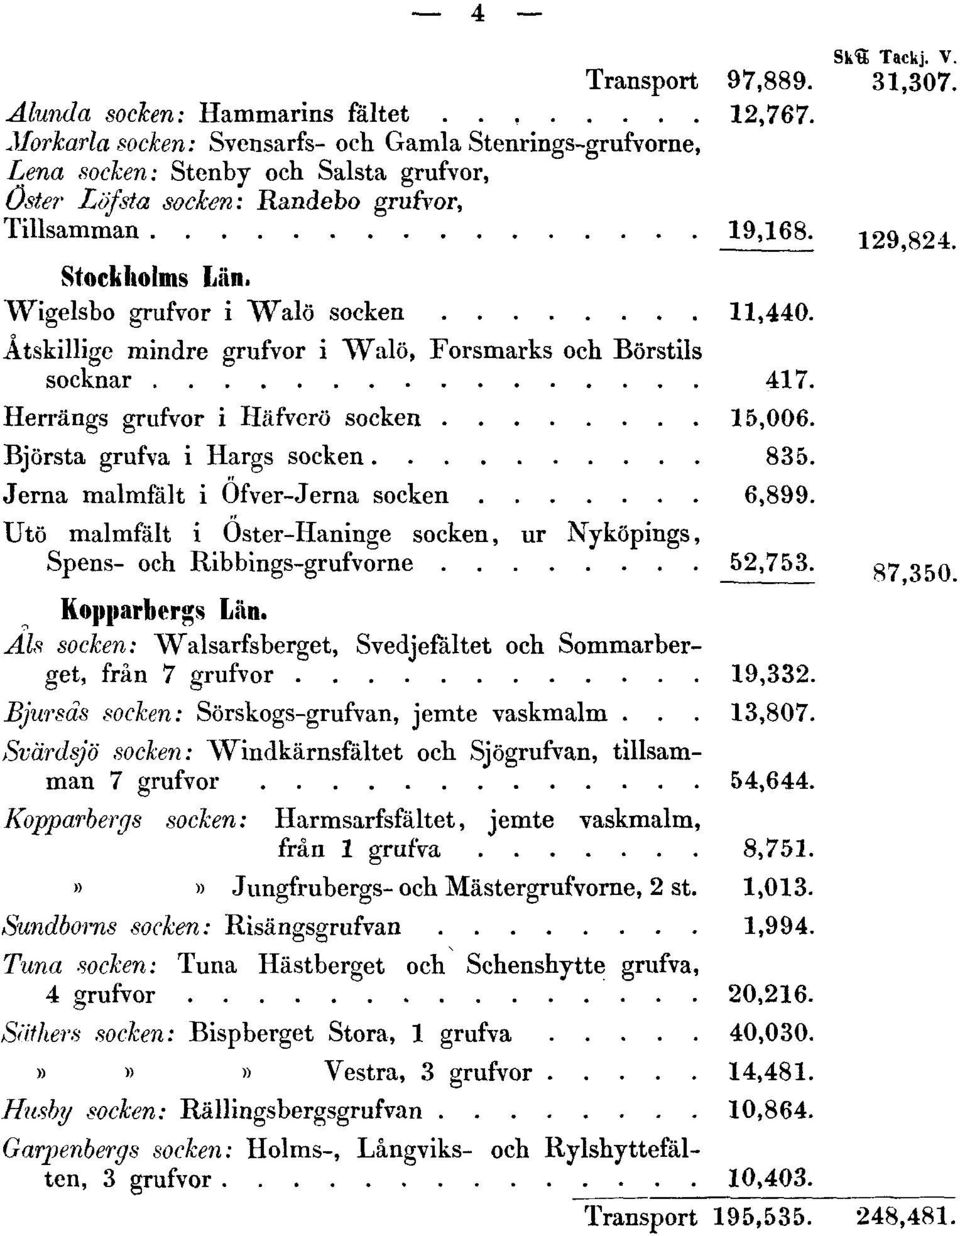 Wigelsbo grufvor i Walö socken 11,440. Atskillige mindre grufvor i Walö, Forsmarks och Börstils socknar 417. Herrängs grufvor i Häfverö socken 15,006. Björsta grufva i Hargs socken 835.